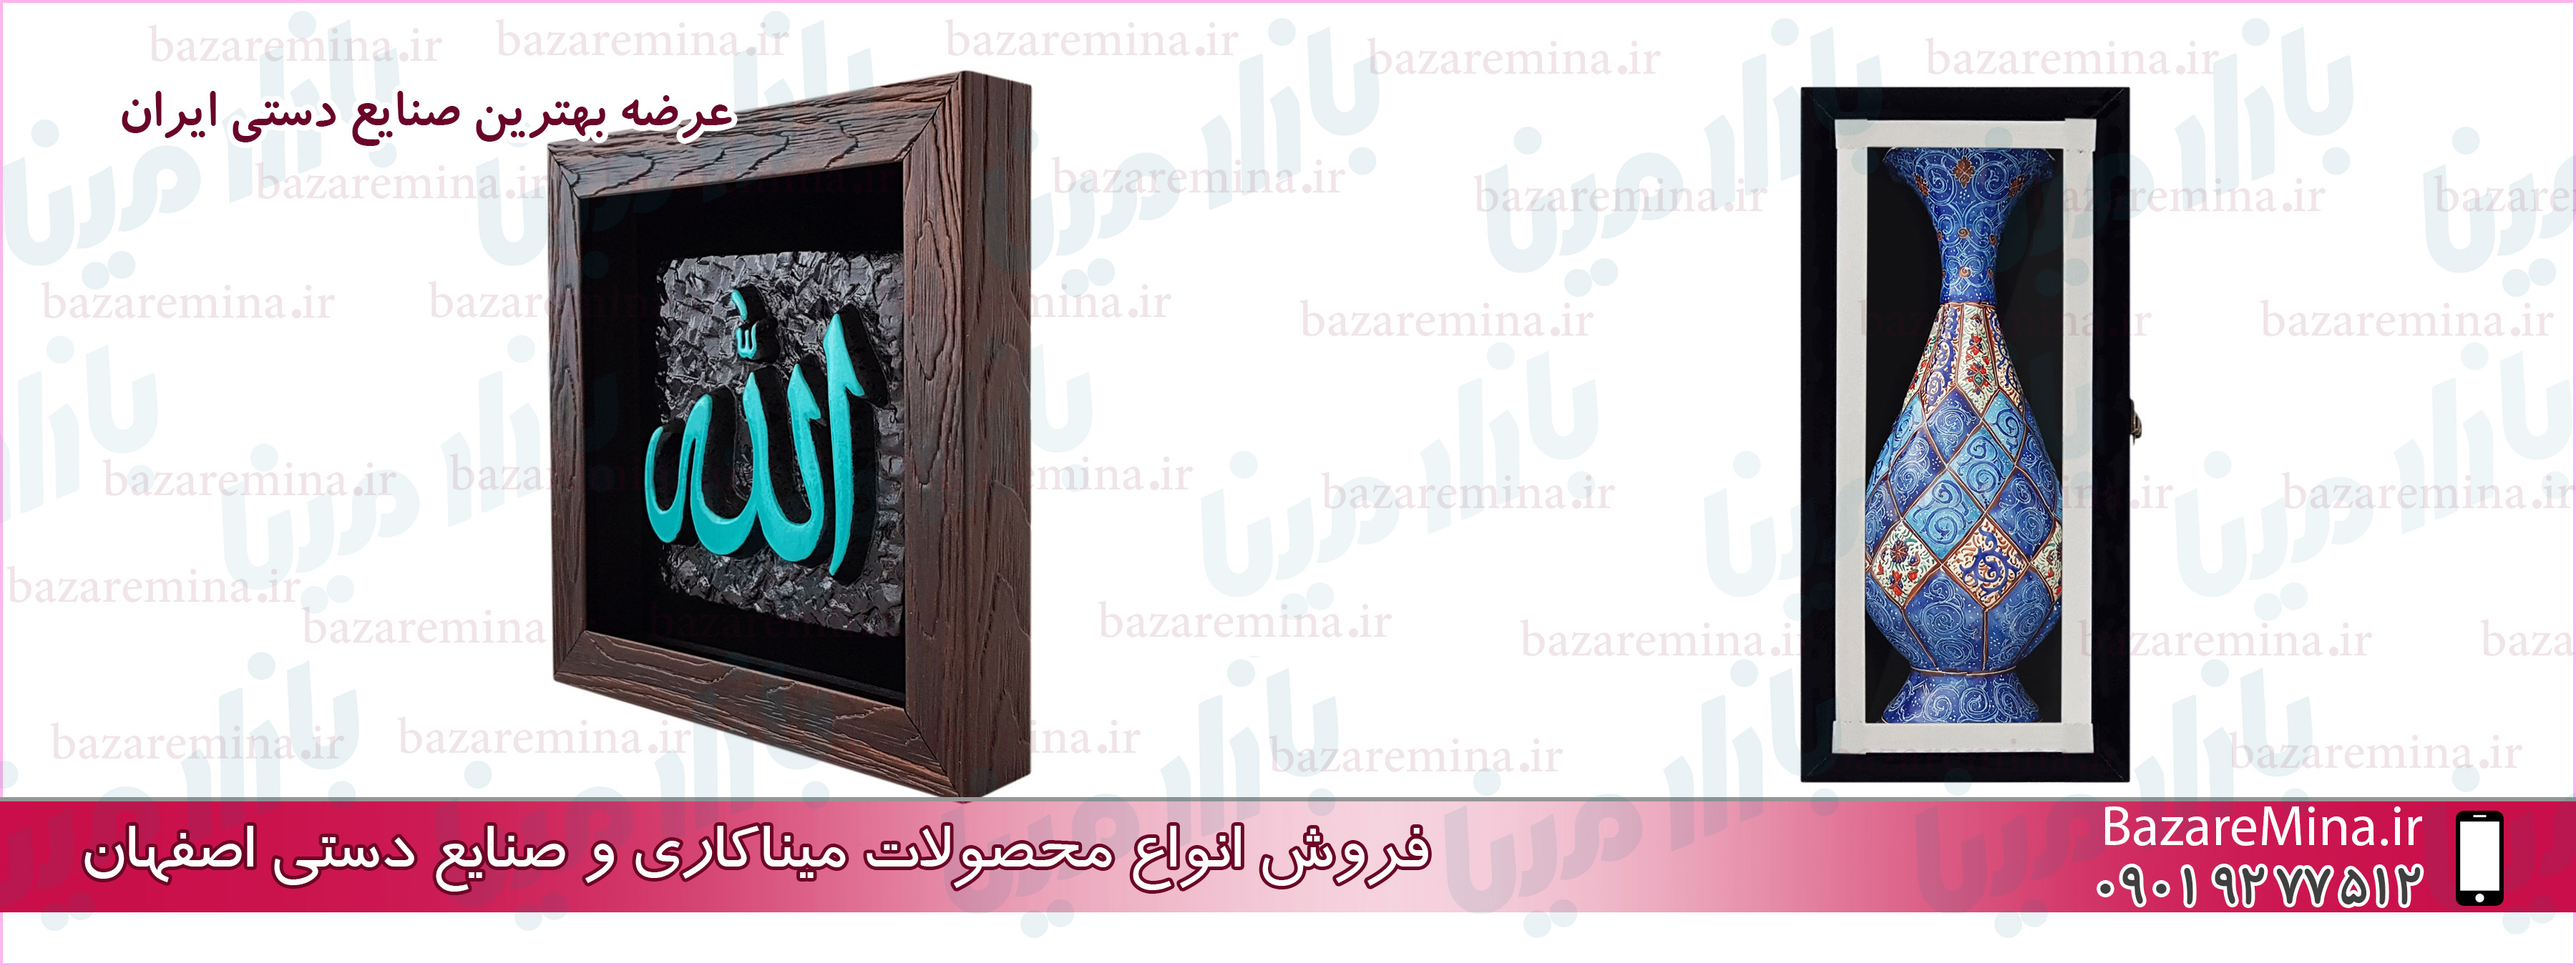 خرید ظروف میناکاری اصفهان